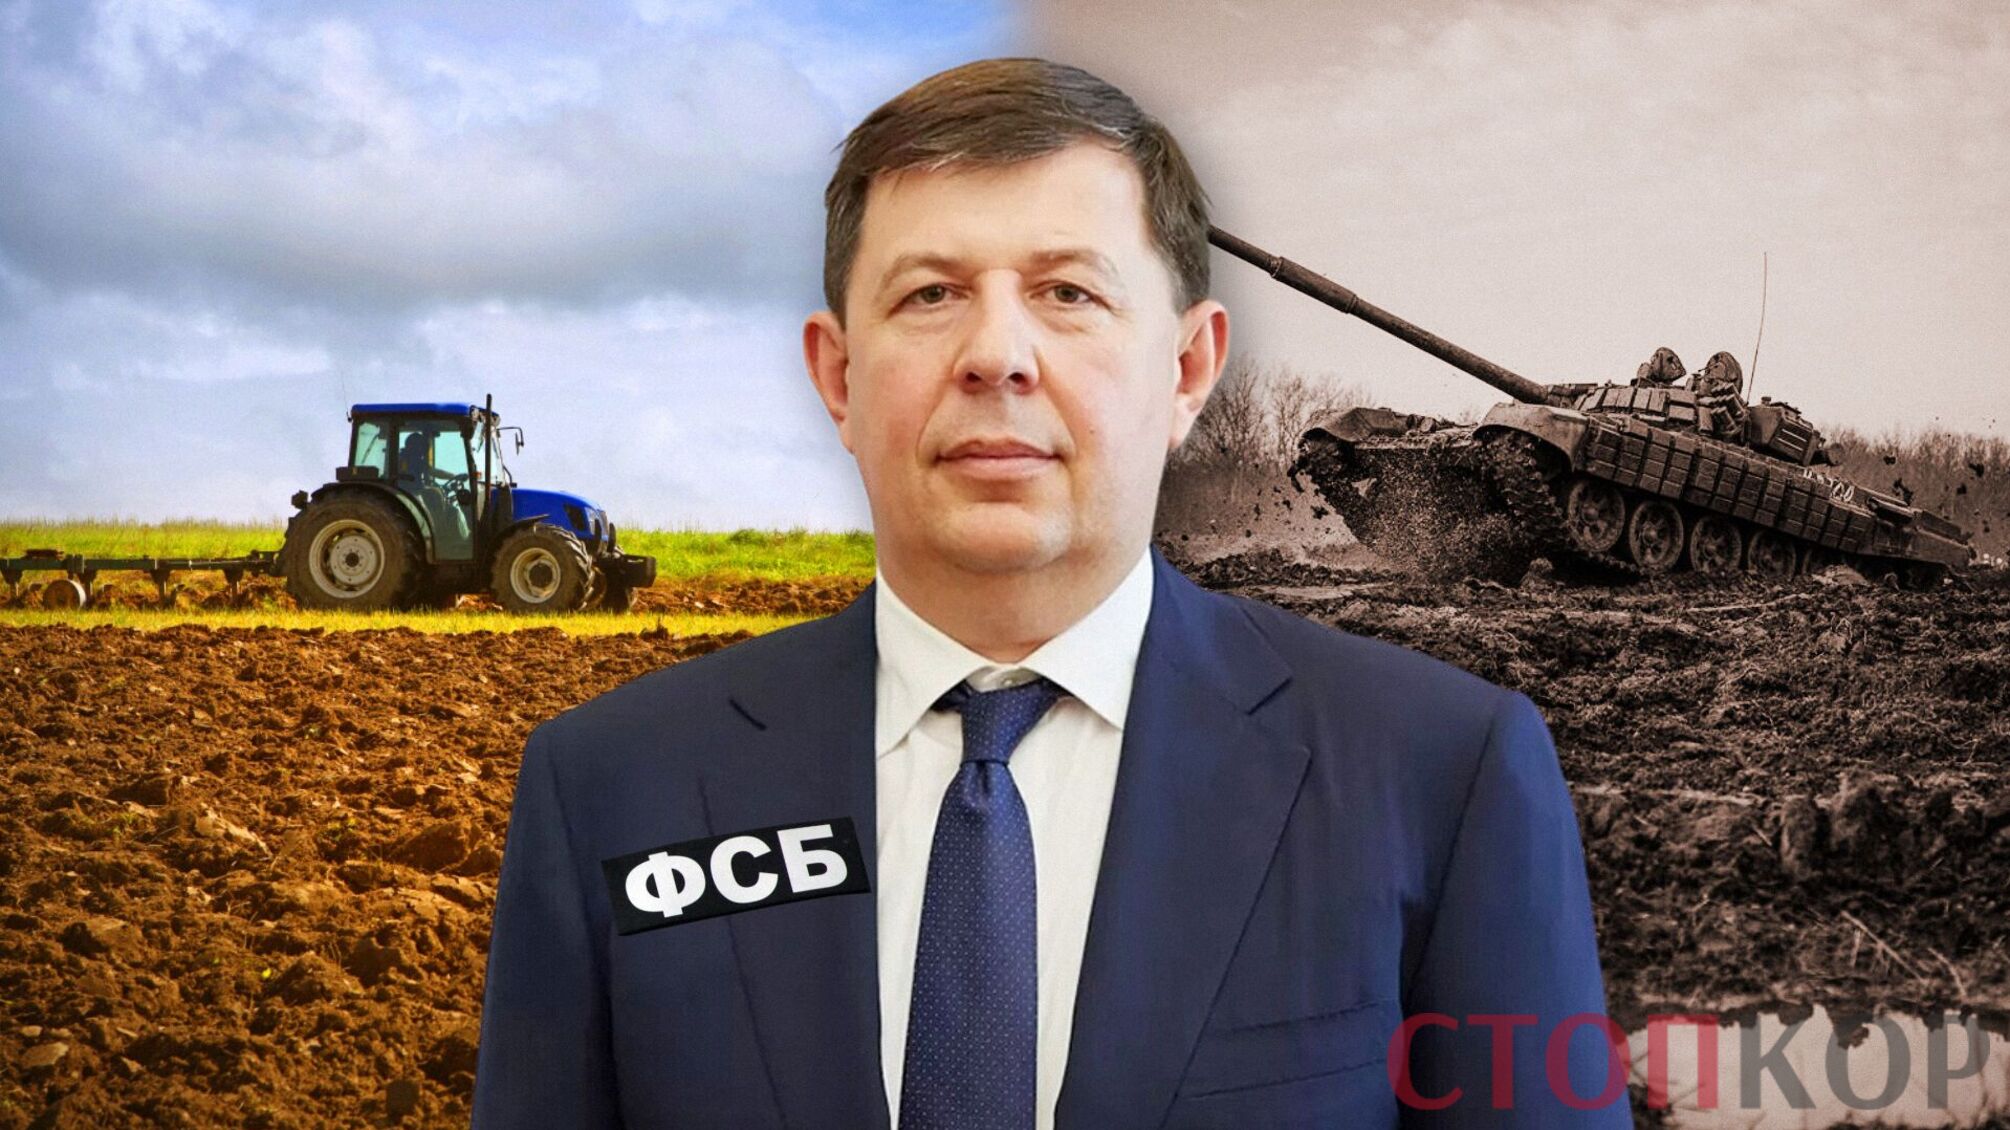 Агробизнес госизменника Козака до сих пор работает в Украине: что известно